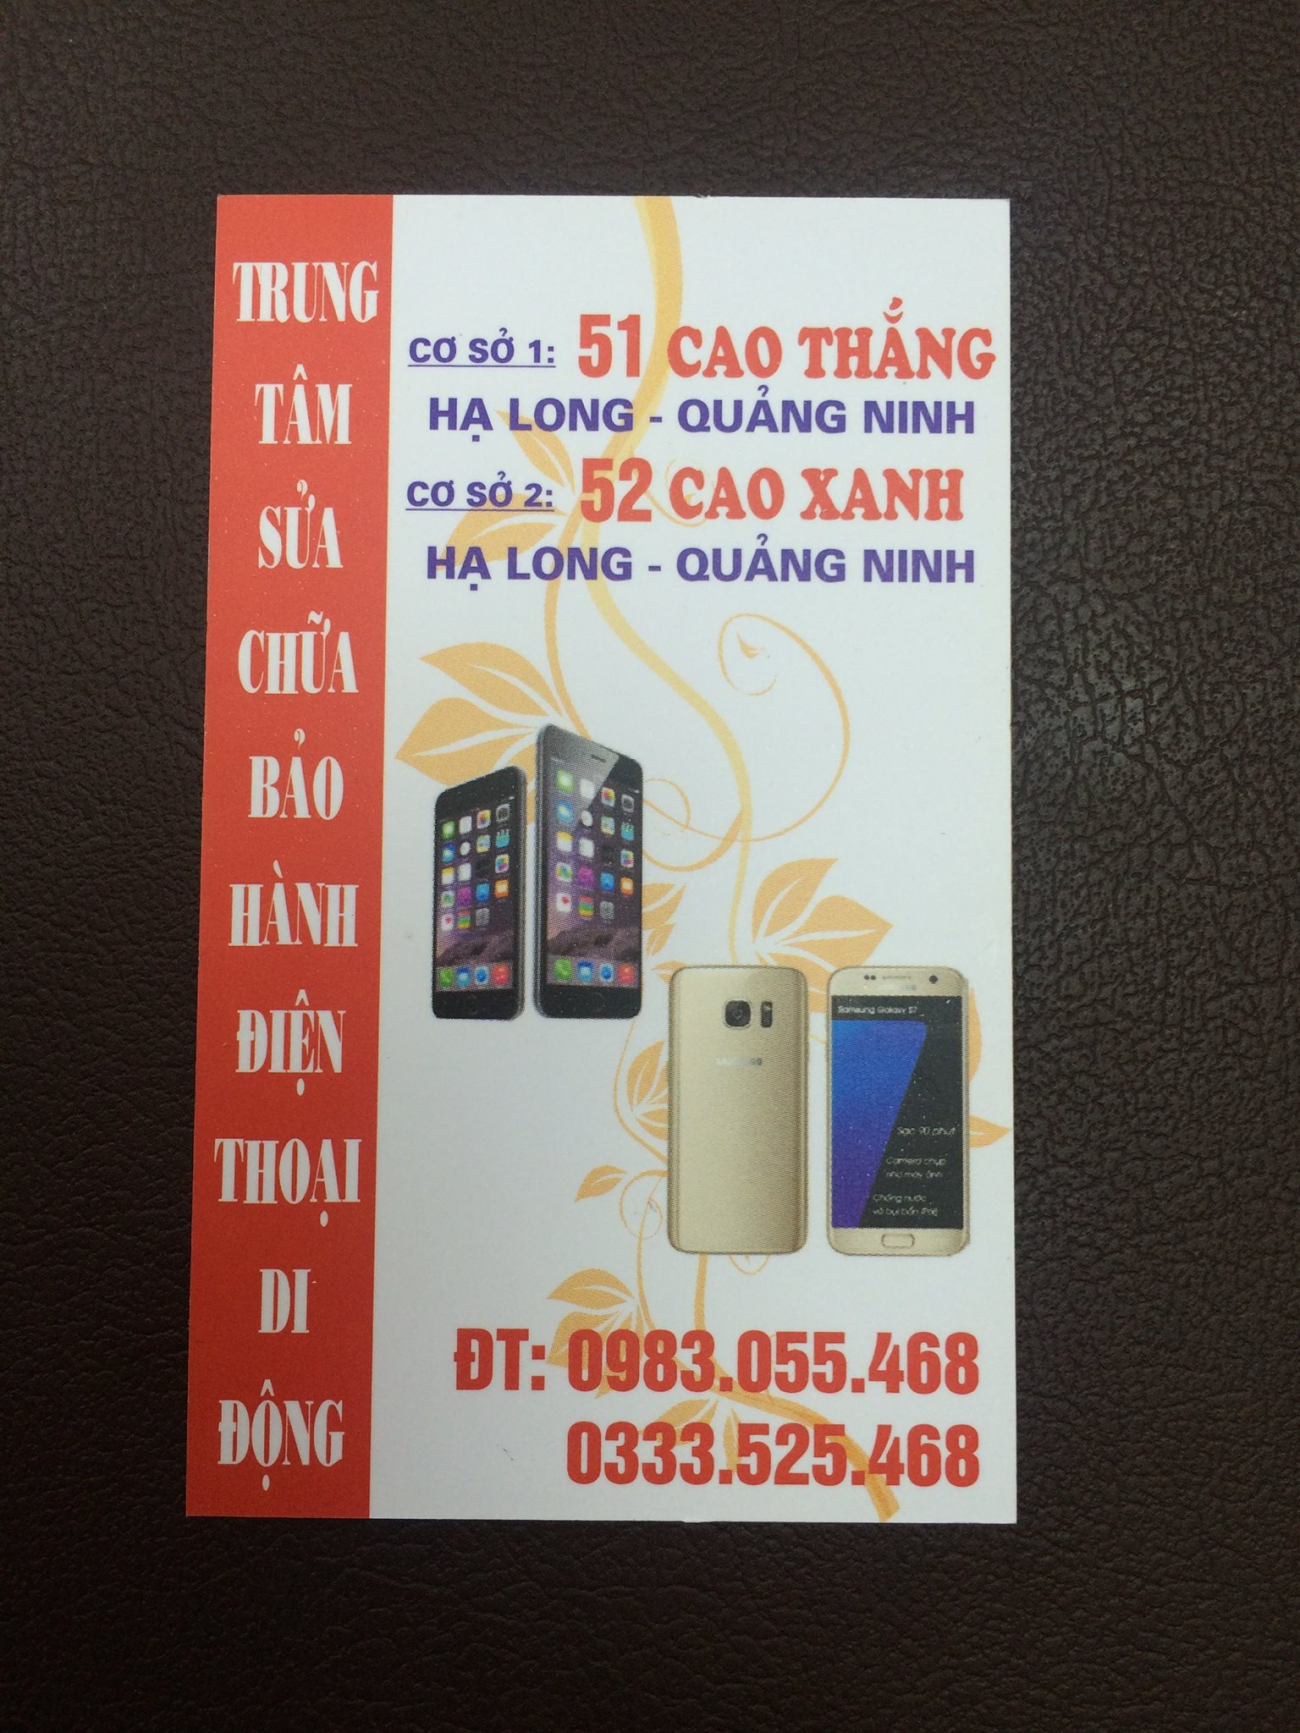 Cửa hàng sửa chữa điện thoại 52 Cao Xanh